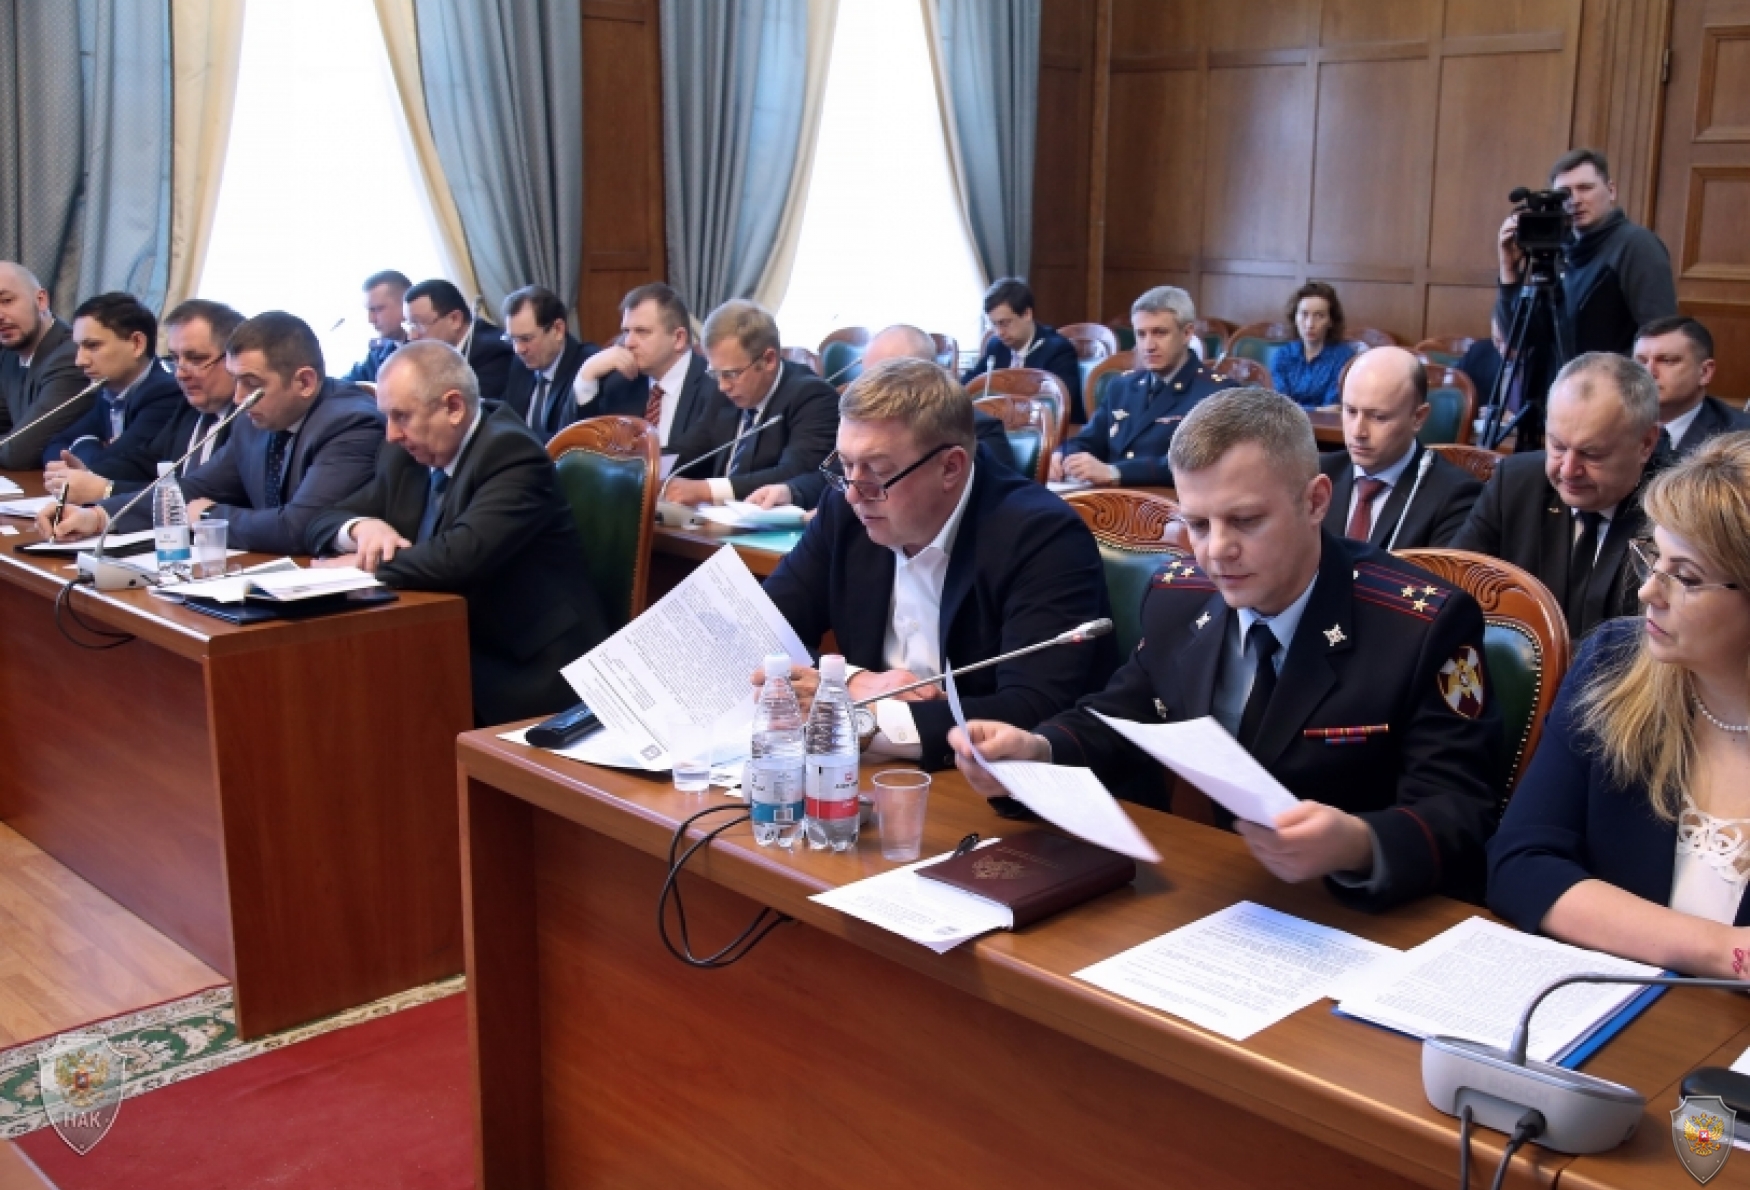 Состоялось совместное заседание антитеррористической комиссии и оперативного штаба в Калининградской области